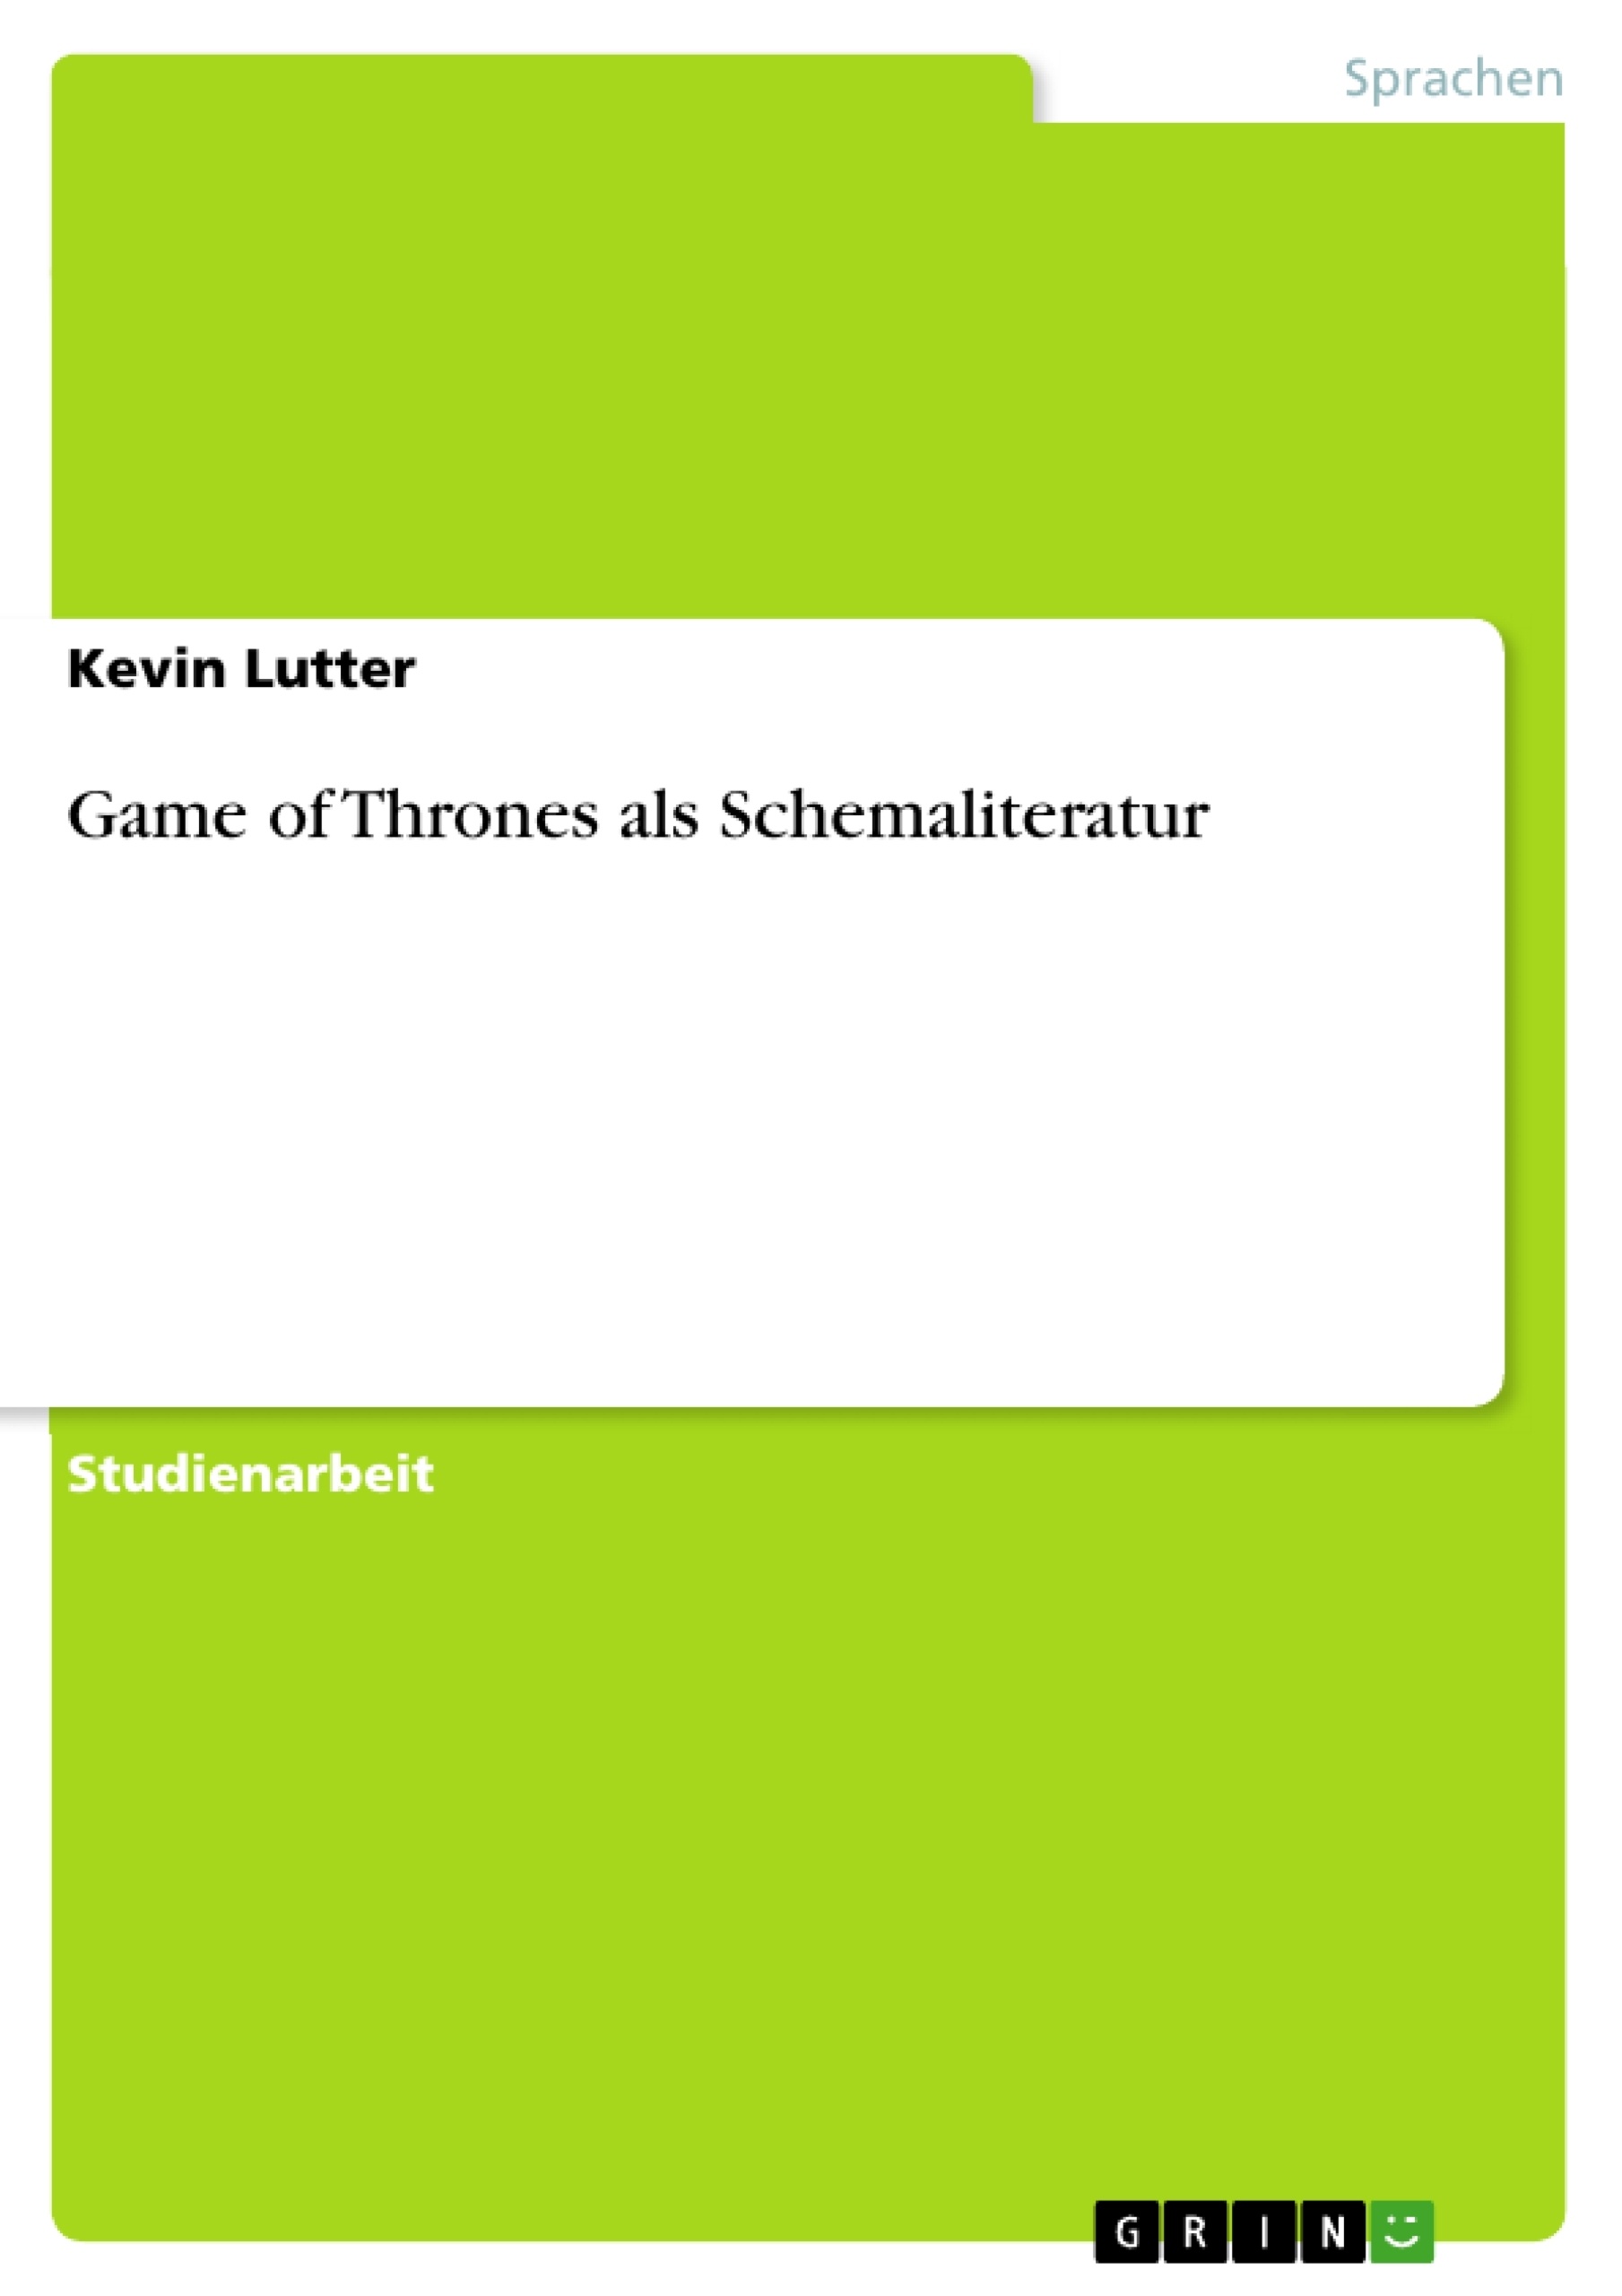 Title: Game of Thrones als Schemaliteratur